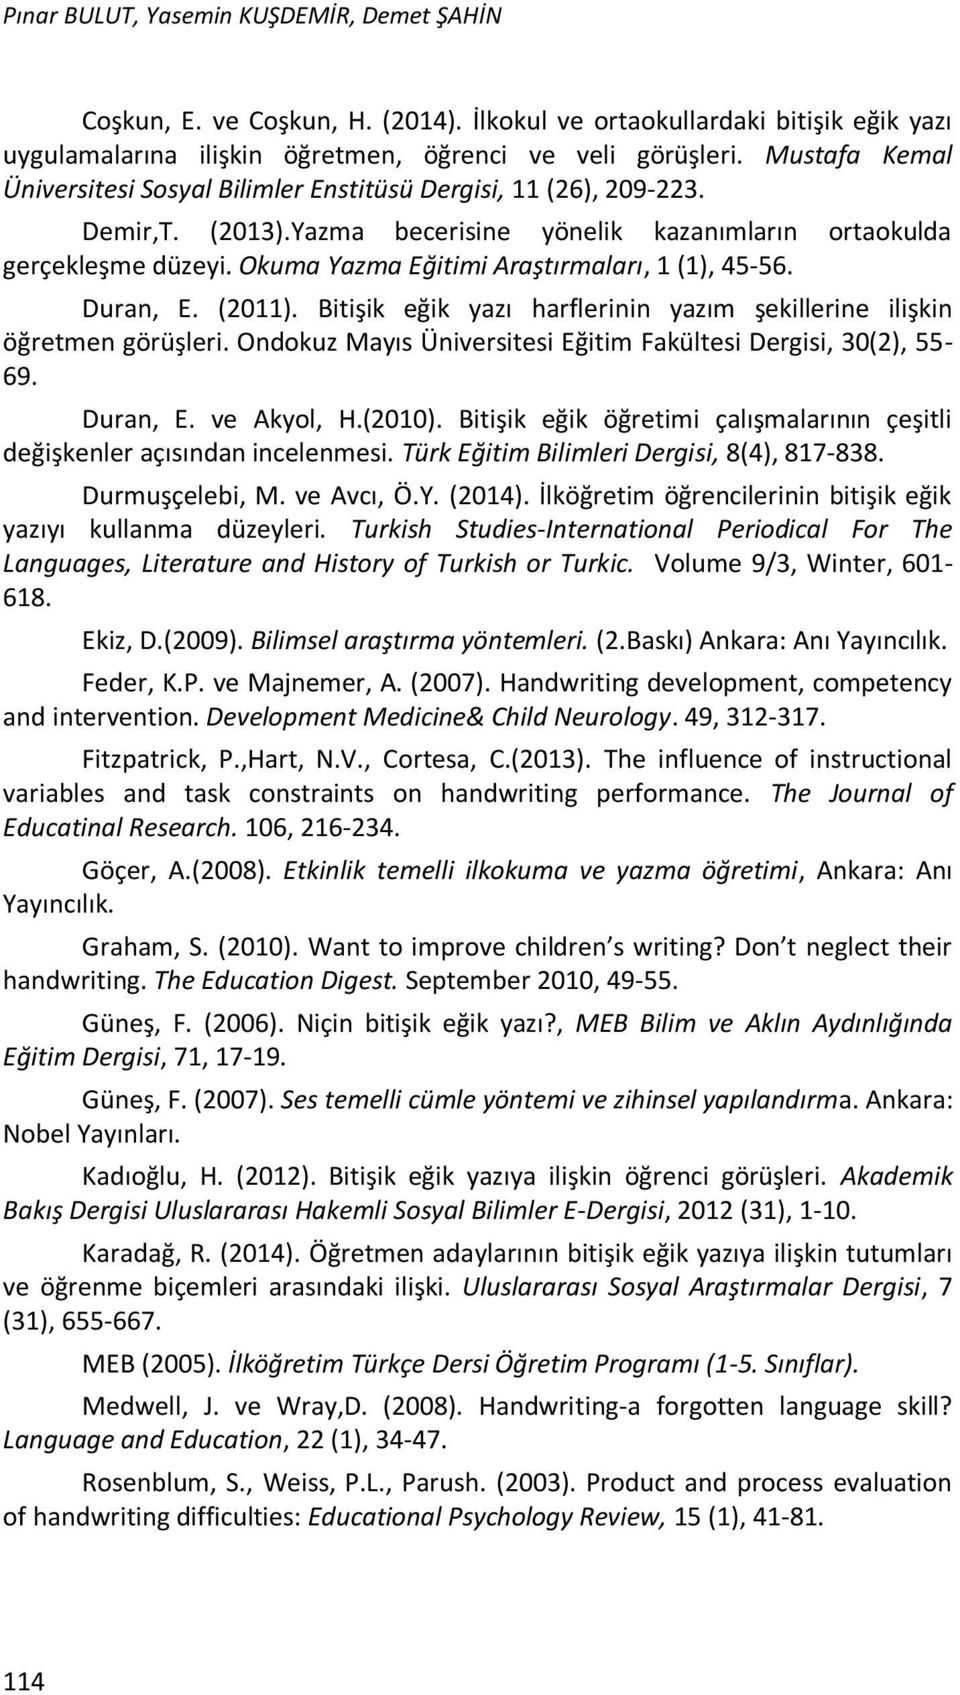 Okuma Yazma Eğitimi Araştırmaları, 1 (1), 45-56. Duran, E. (2011). Bitişik eğik yazı harflerinin yazım şekillerine ilişkin öğretmen görüşleri.